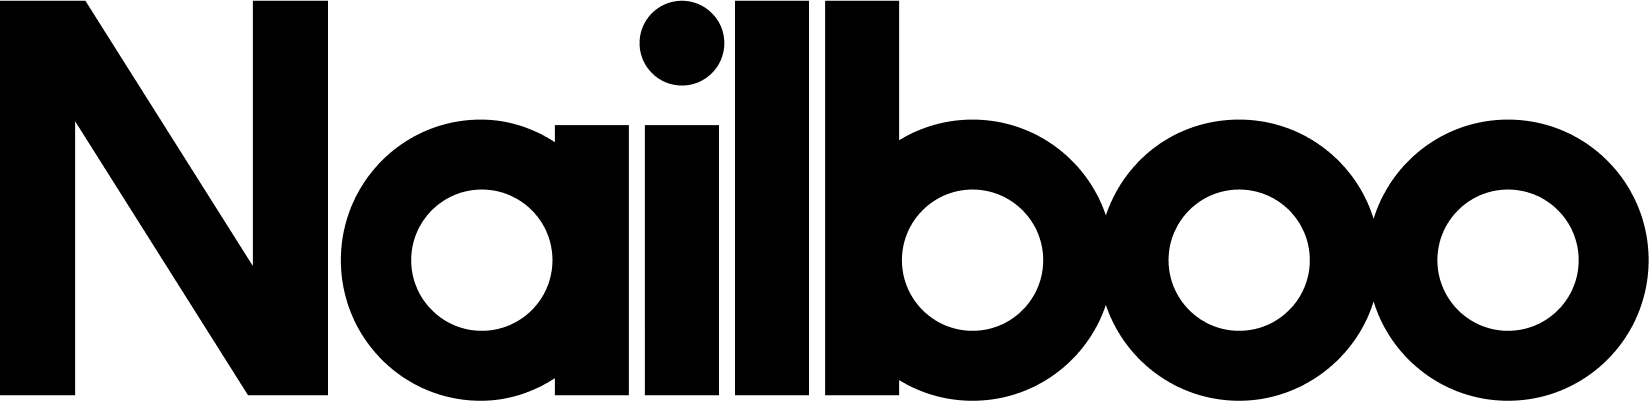 Nailboo logo